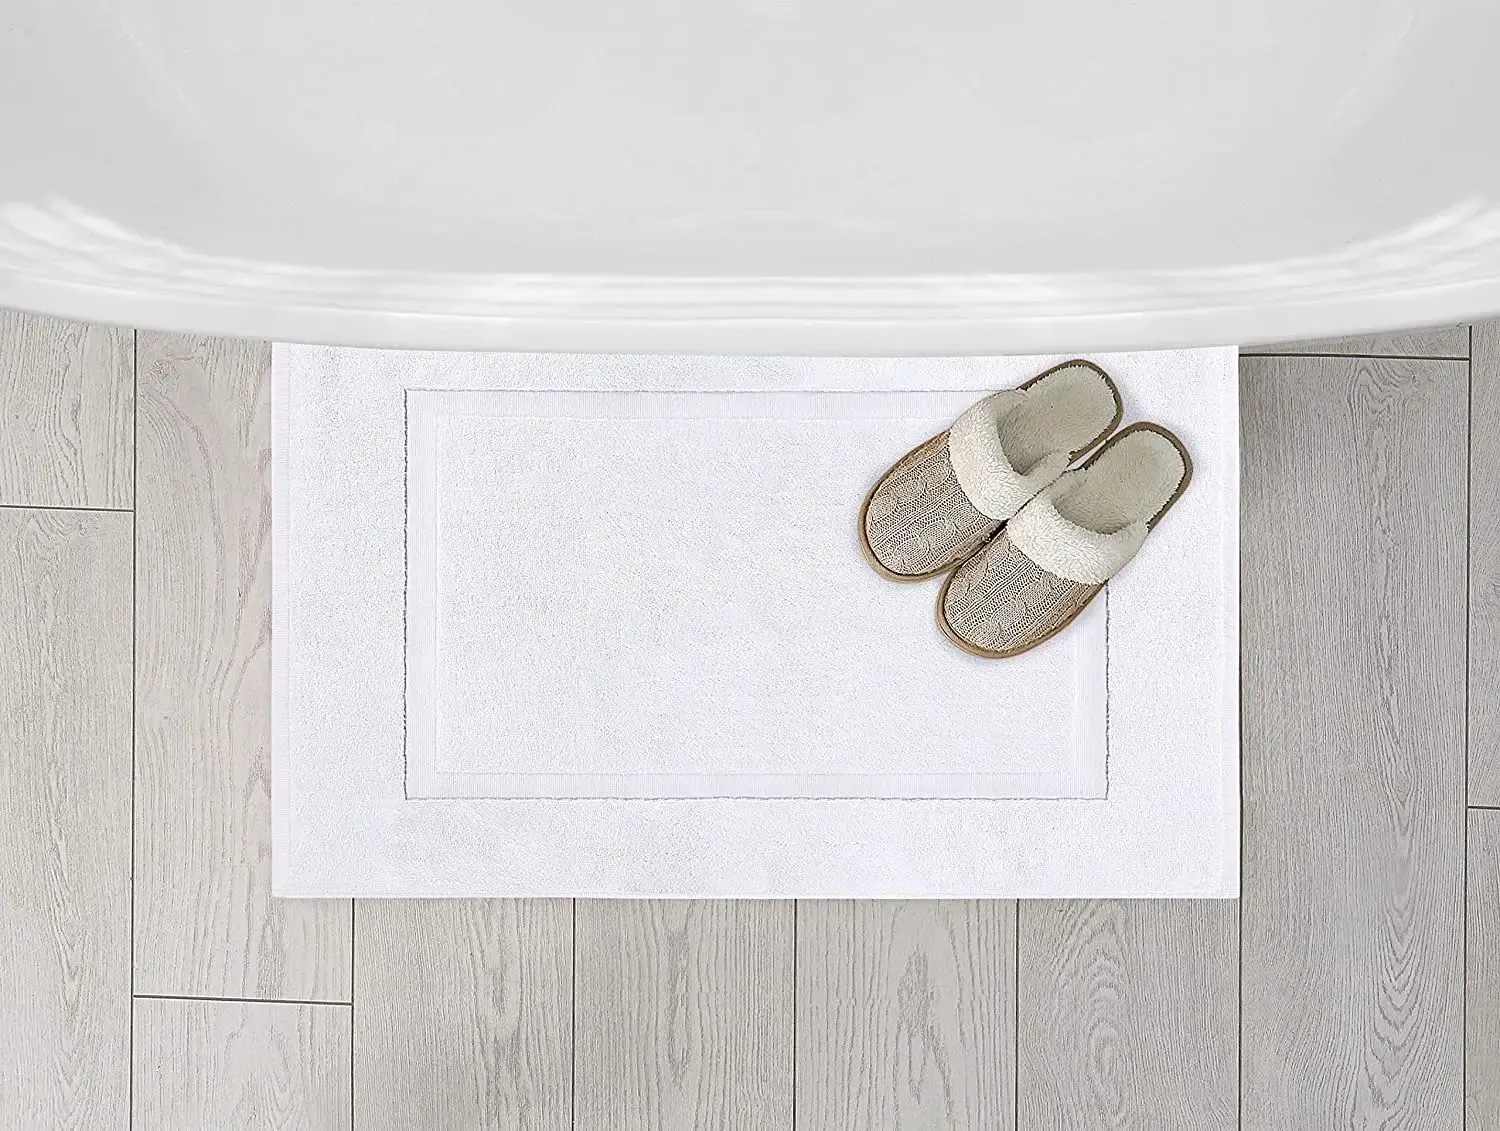 Mats Turkish Luxury Bath Mat Cotton Soft Oversized Bathroom Towels Entrance Doormat Grounding Mats Welcome Doormat